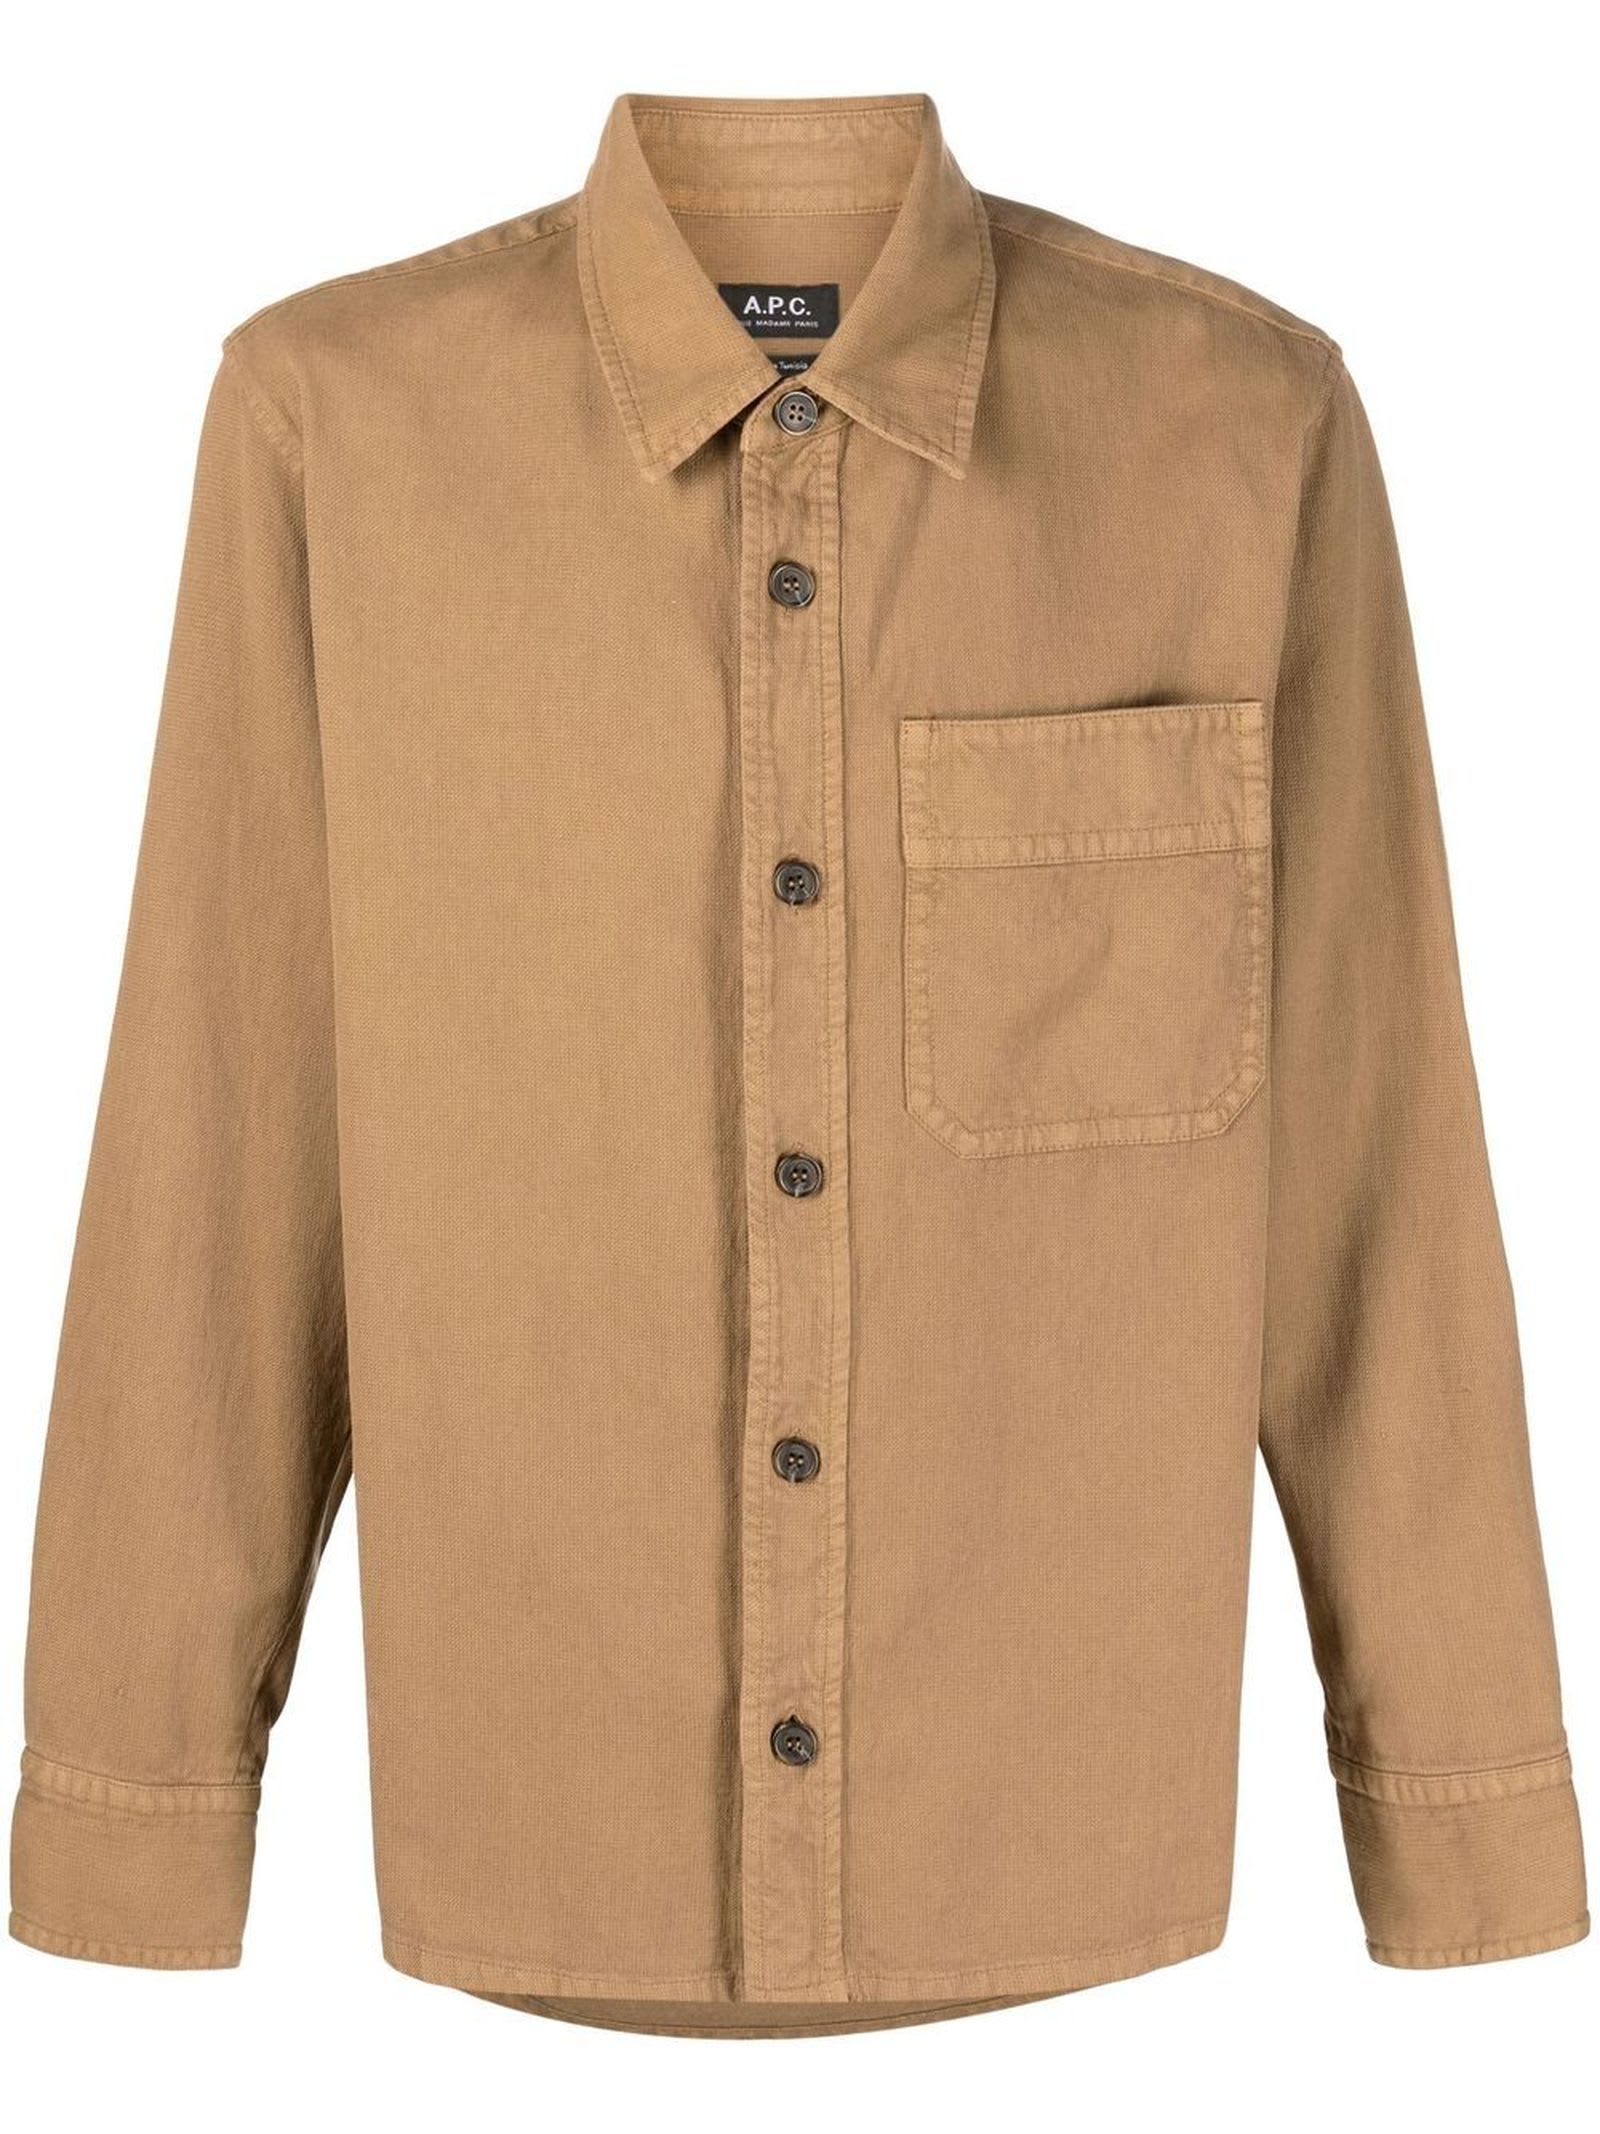 A.P.C. Caramel Brown Cotton-linen Blend Shirt Jacket